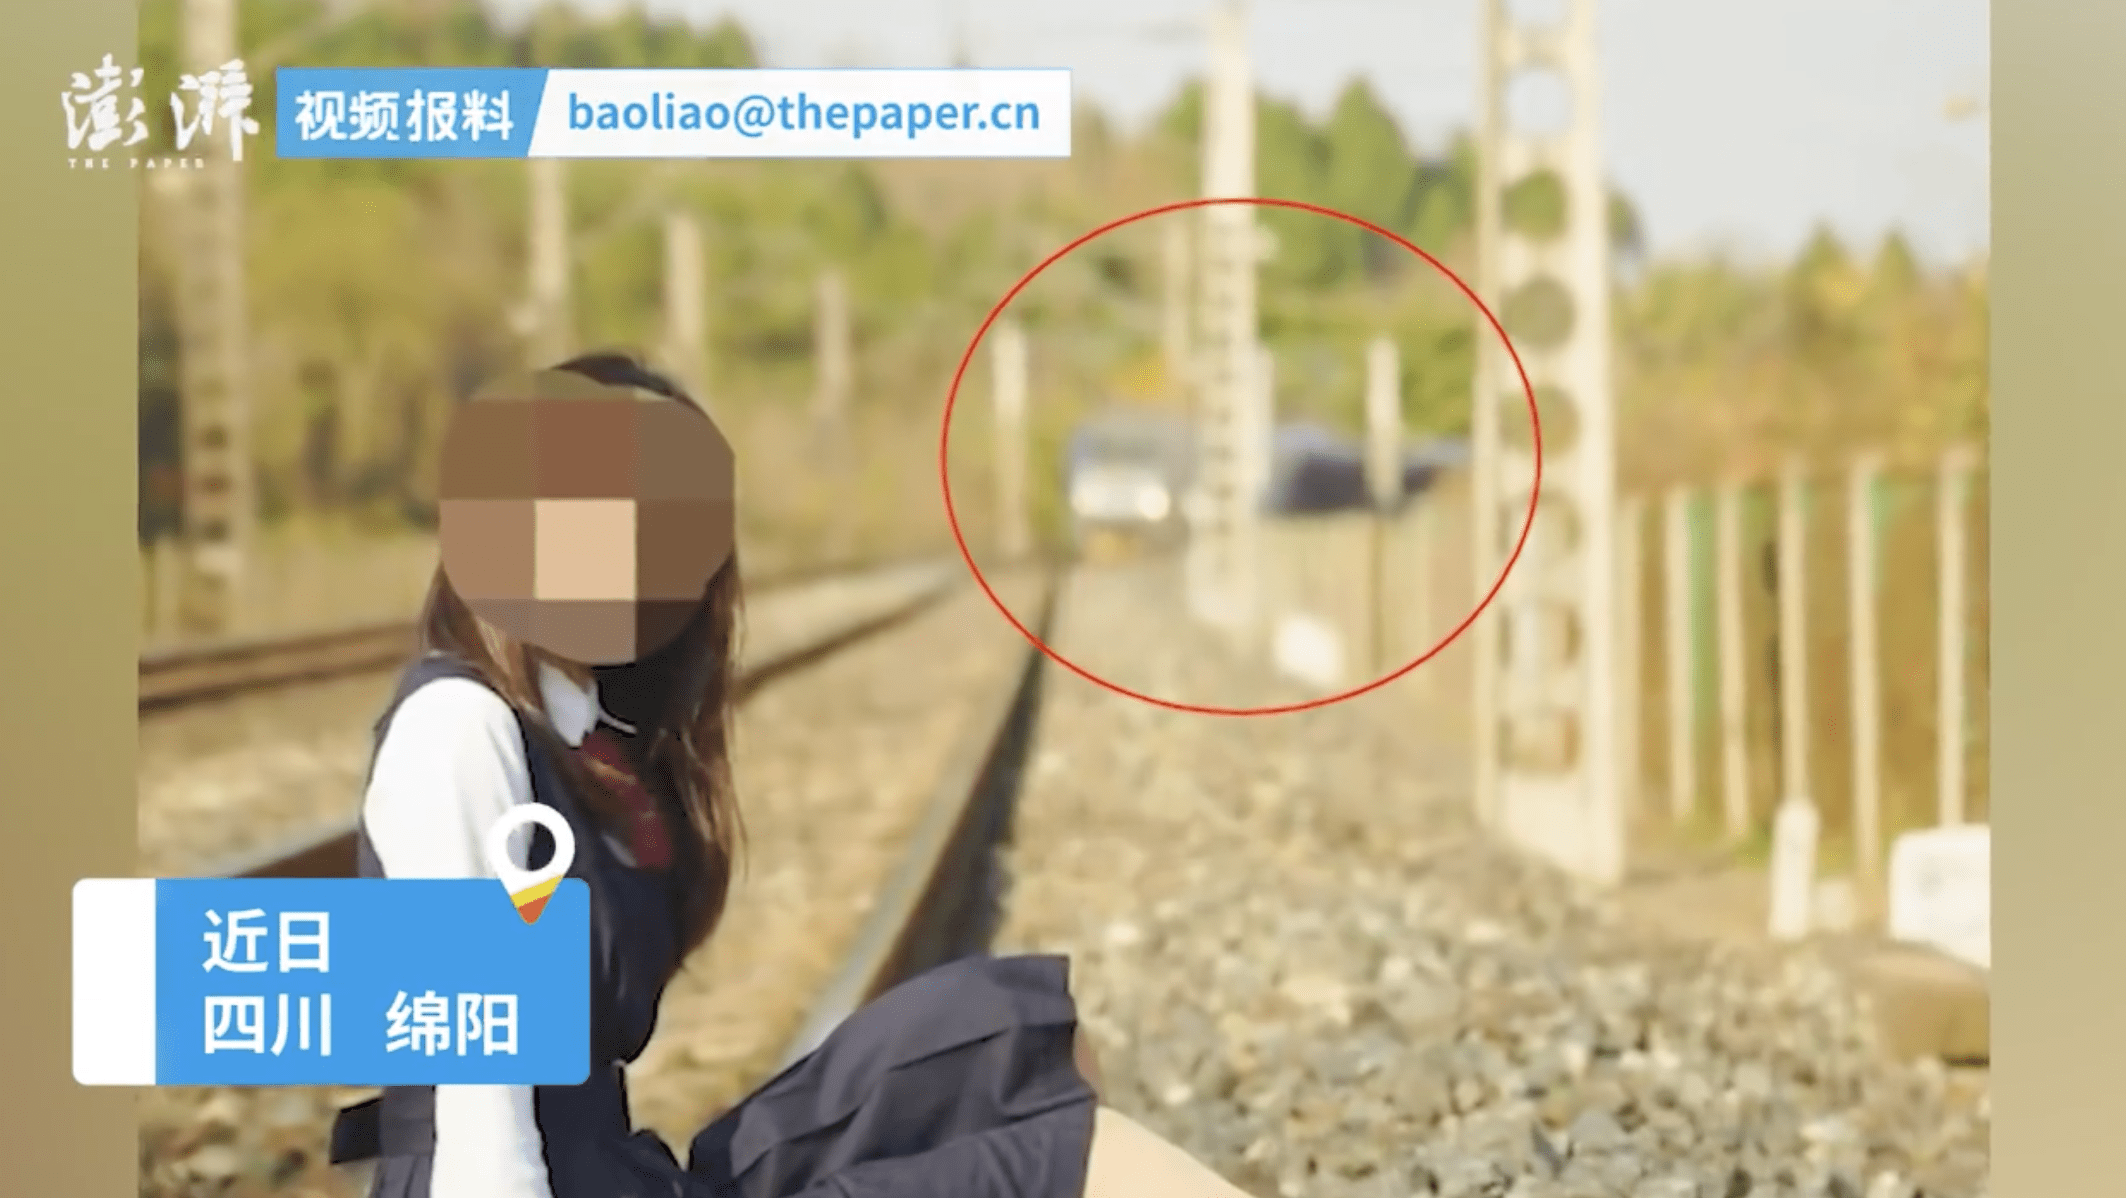 尼康35 1.4G铁道火车美女人像-中关村在线摄影论坛